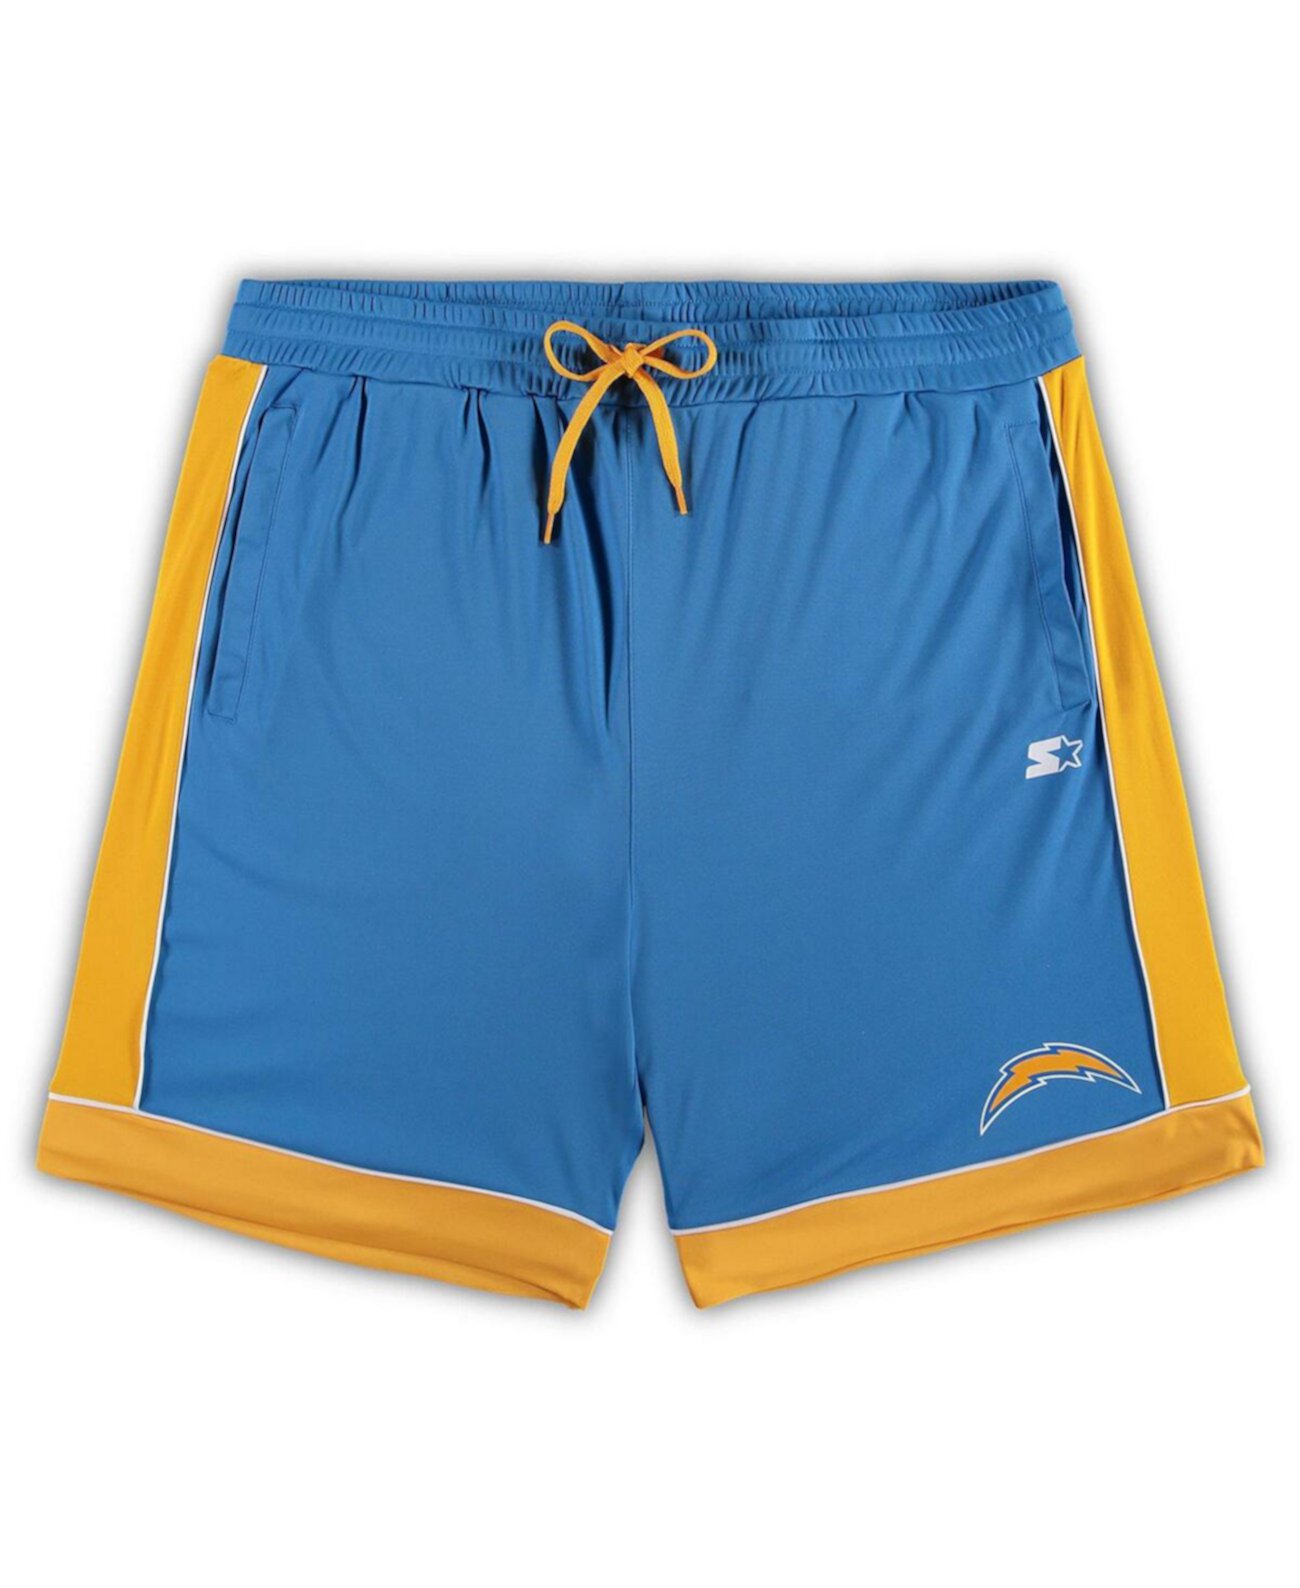 Мужские пудровые синие, золотые модные шорты Los Angeles Chargers Starter